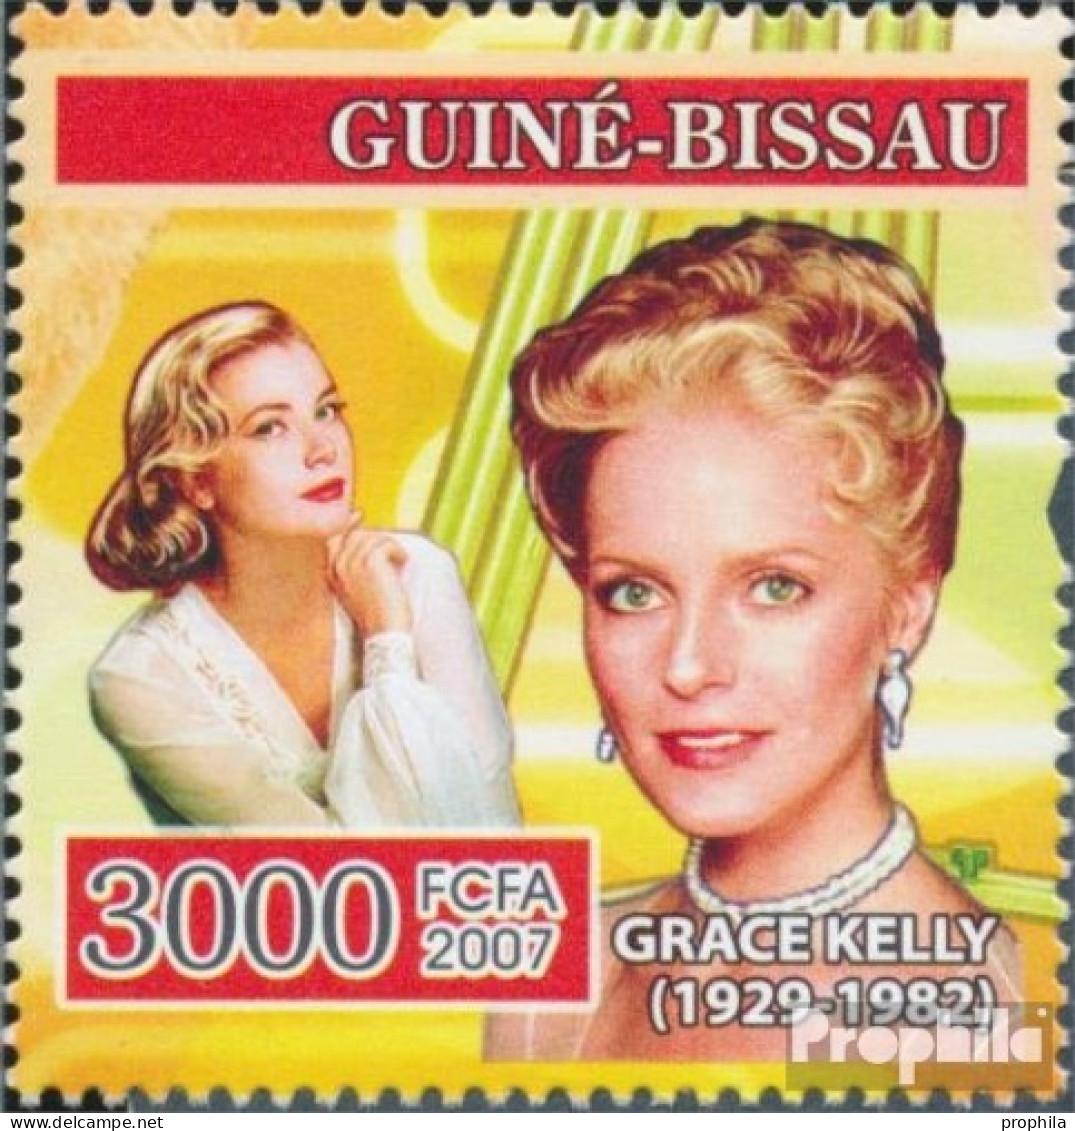 Guinea-Bissau 3495 (kompl. Ausgabe) Postfrisch 2007 Filmschauspieler - Guinea-Bissau